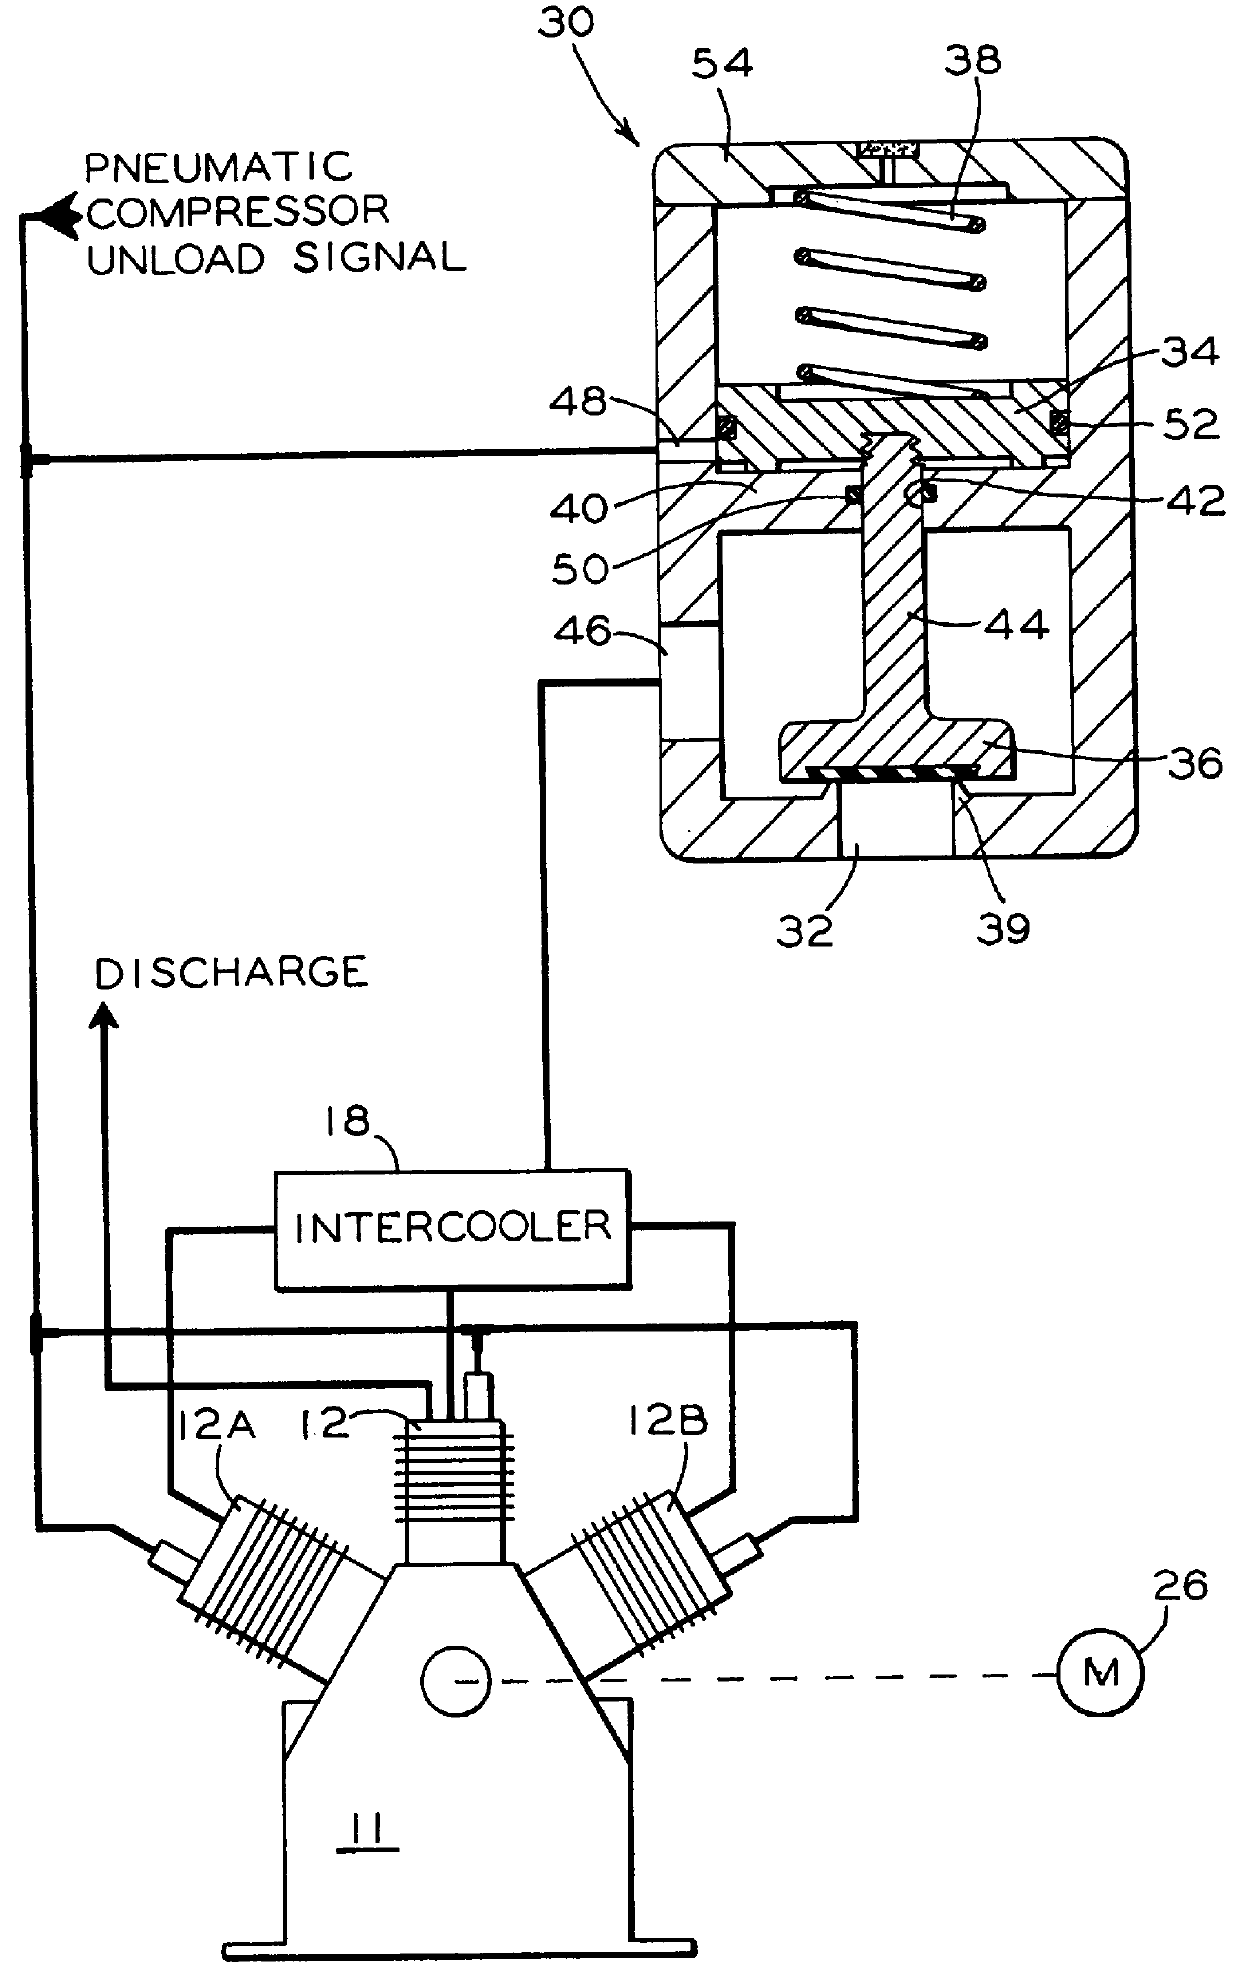 Intercooler blowdown valve